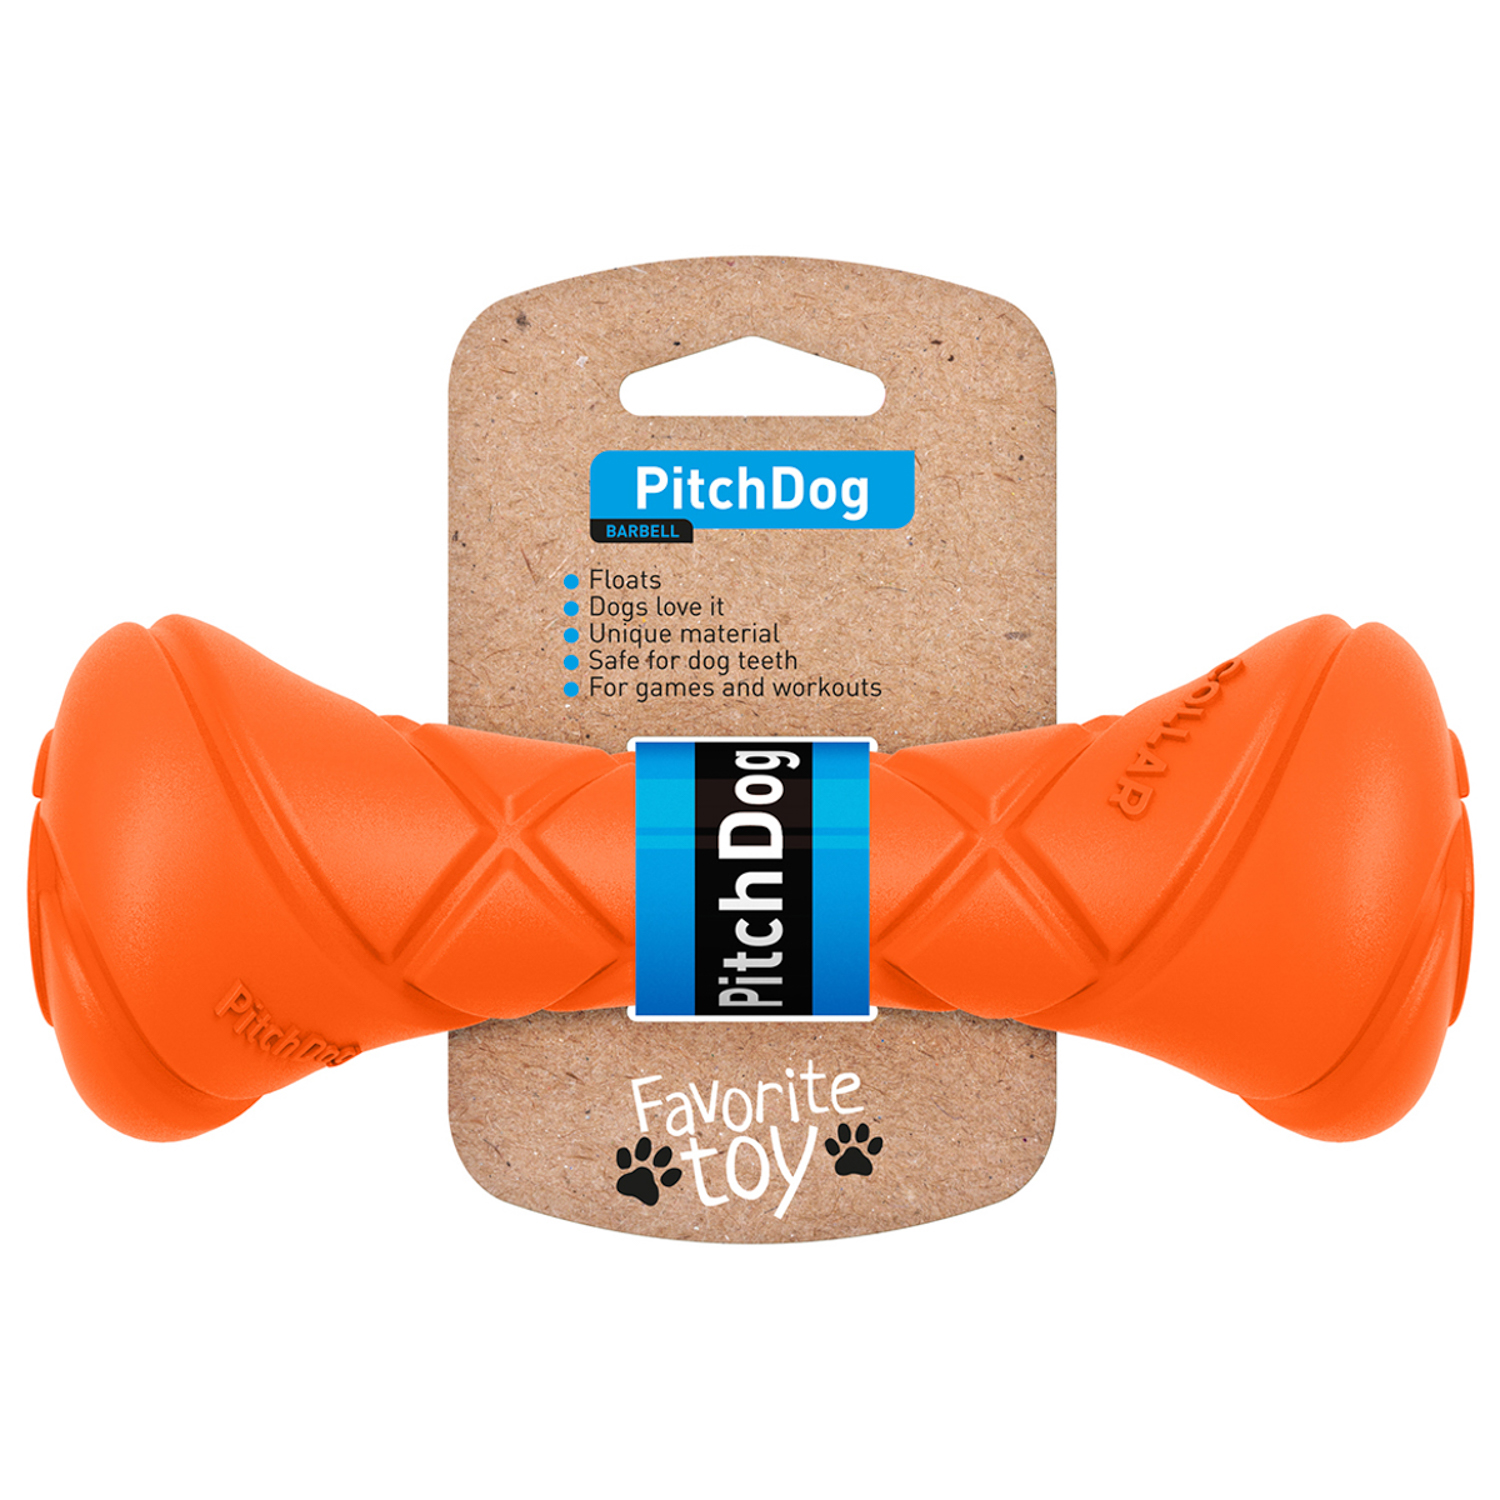 Грейфер (игрушка для перетягивания) для собак PitchDog , оранжевый, 19 см, диаметр 7 см